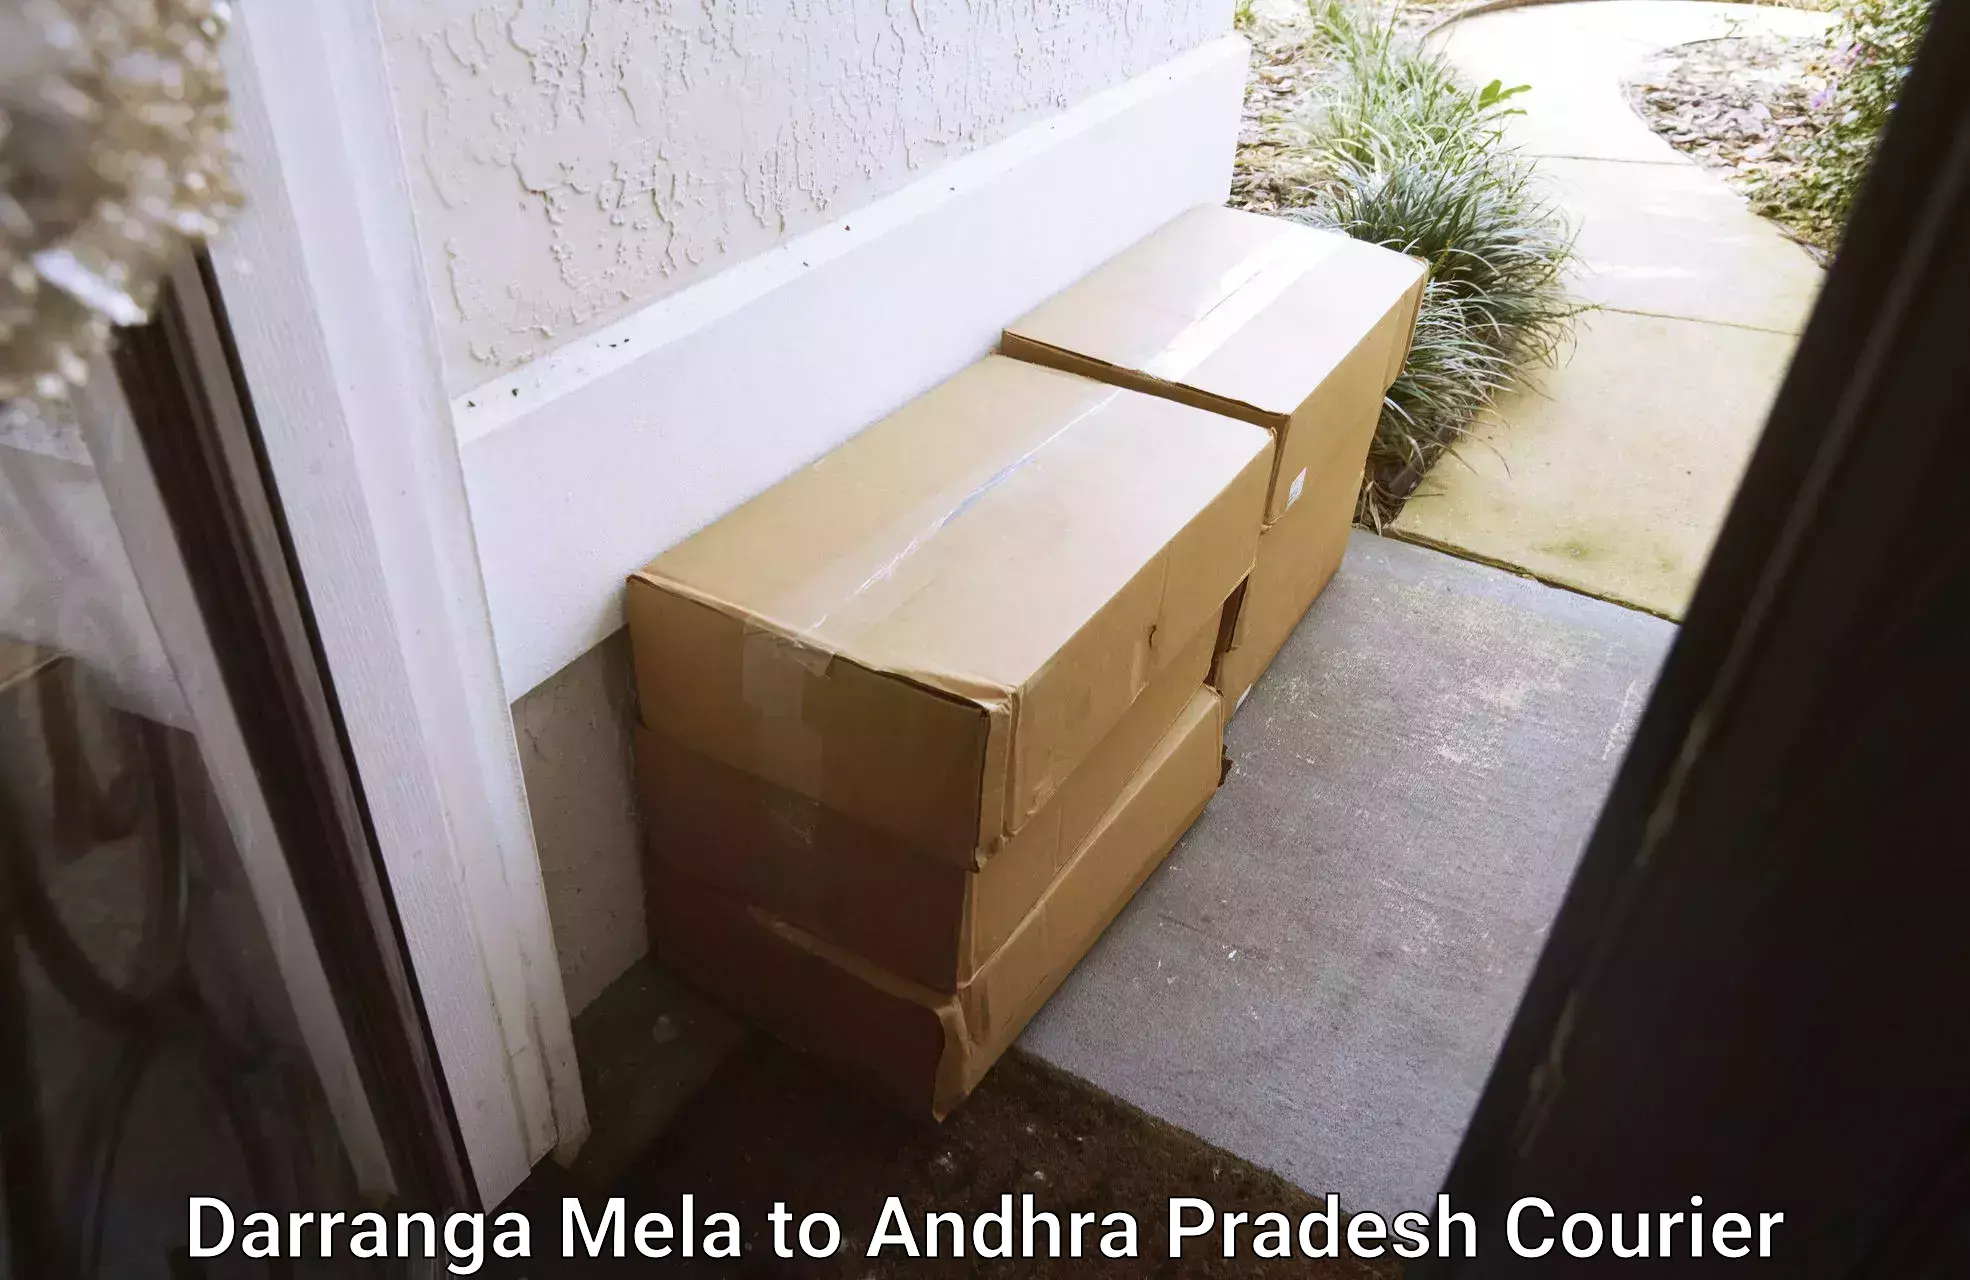 Advanced shipping logistics Darranga Mela to Andhra Pradesh